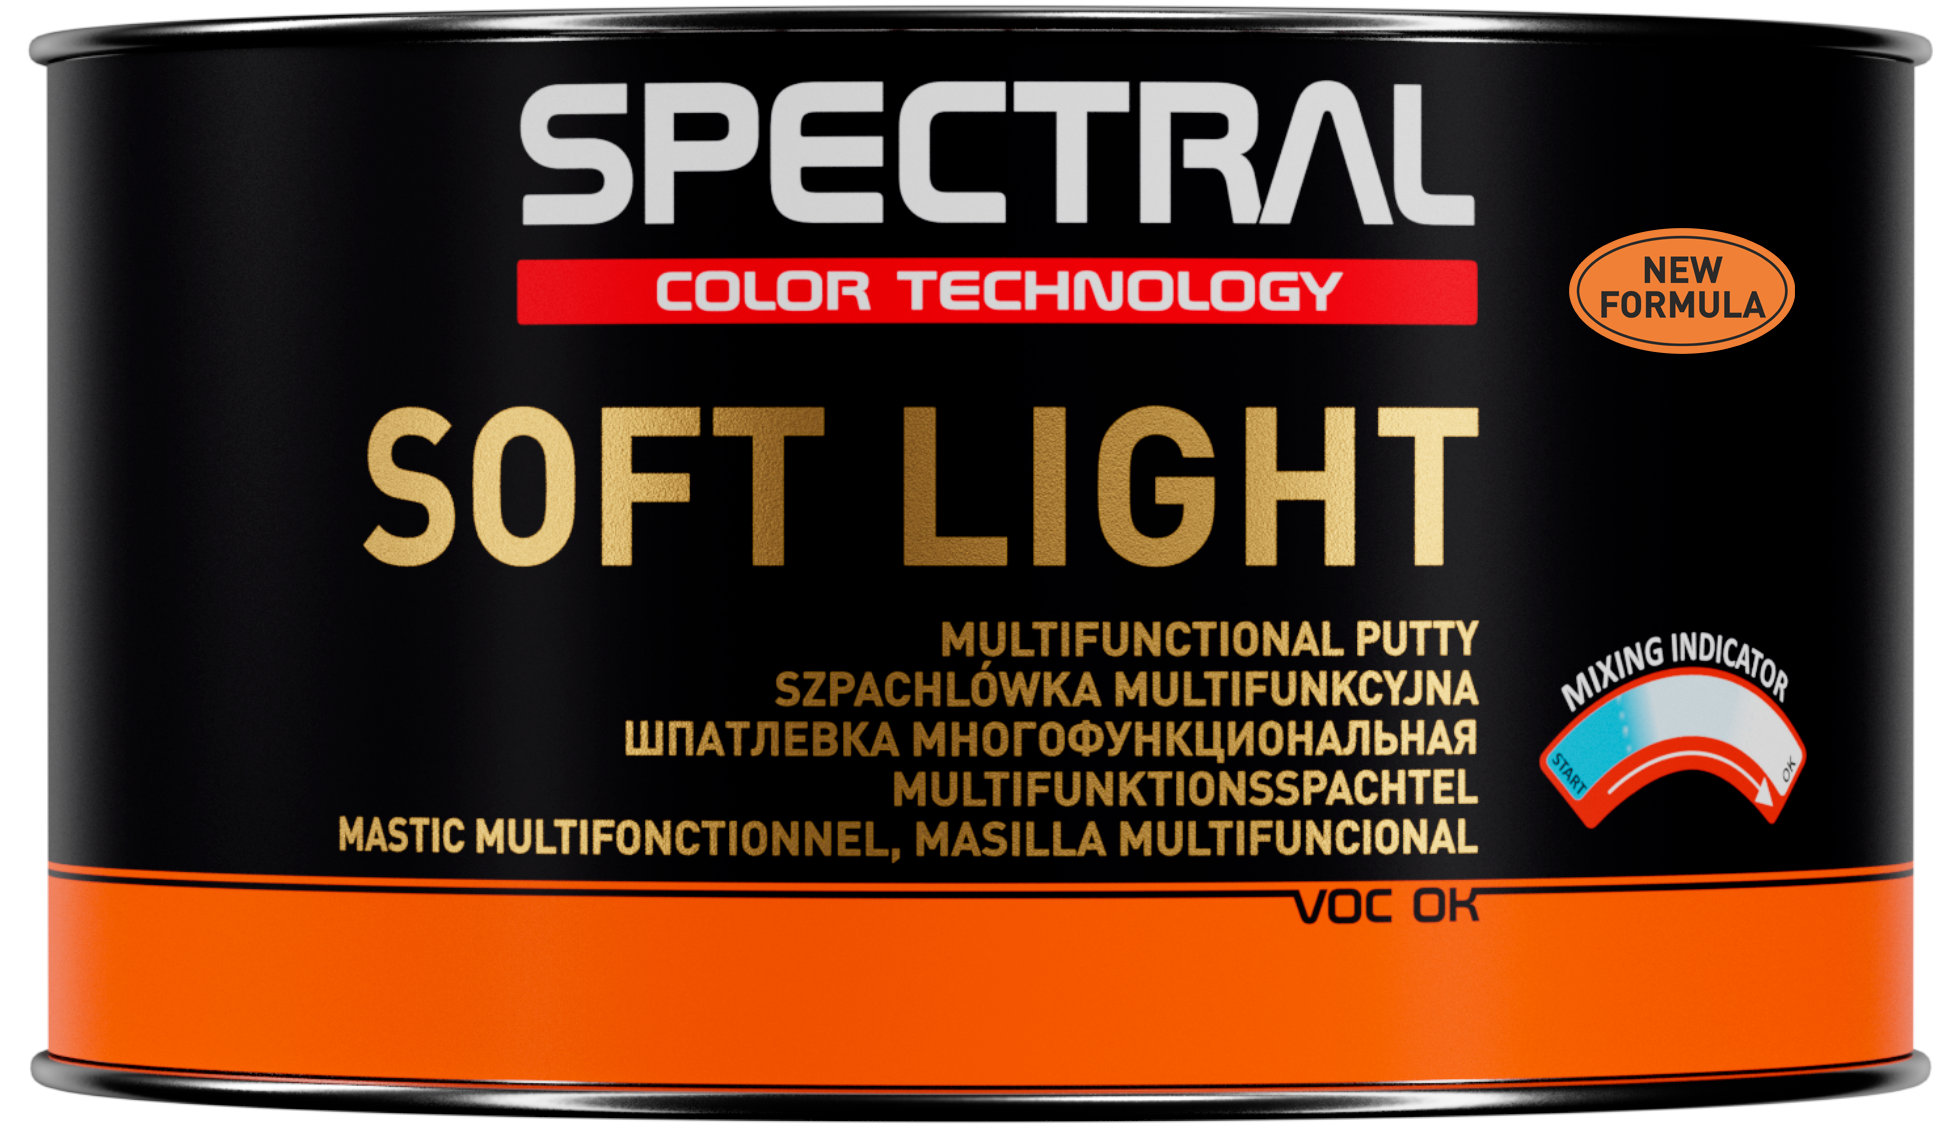 SOFT LIGHT - Dwuskładnikowa szpachlówka multifunkcyjna